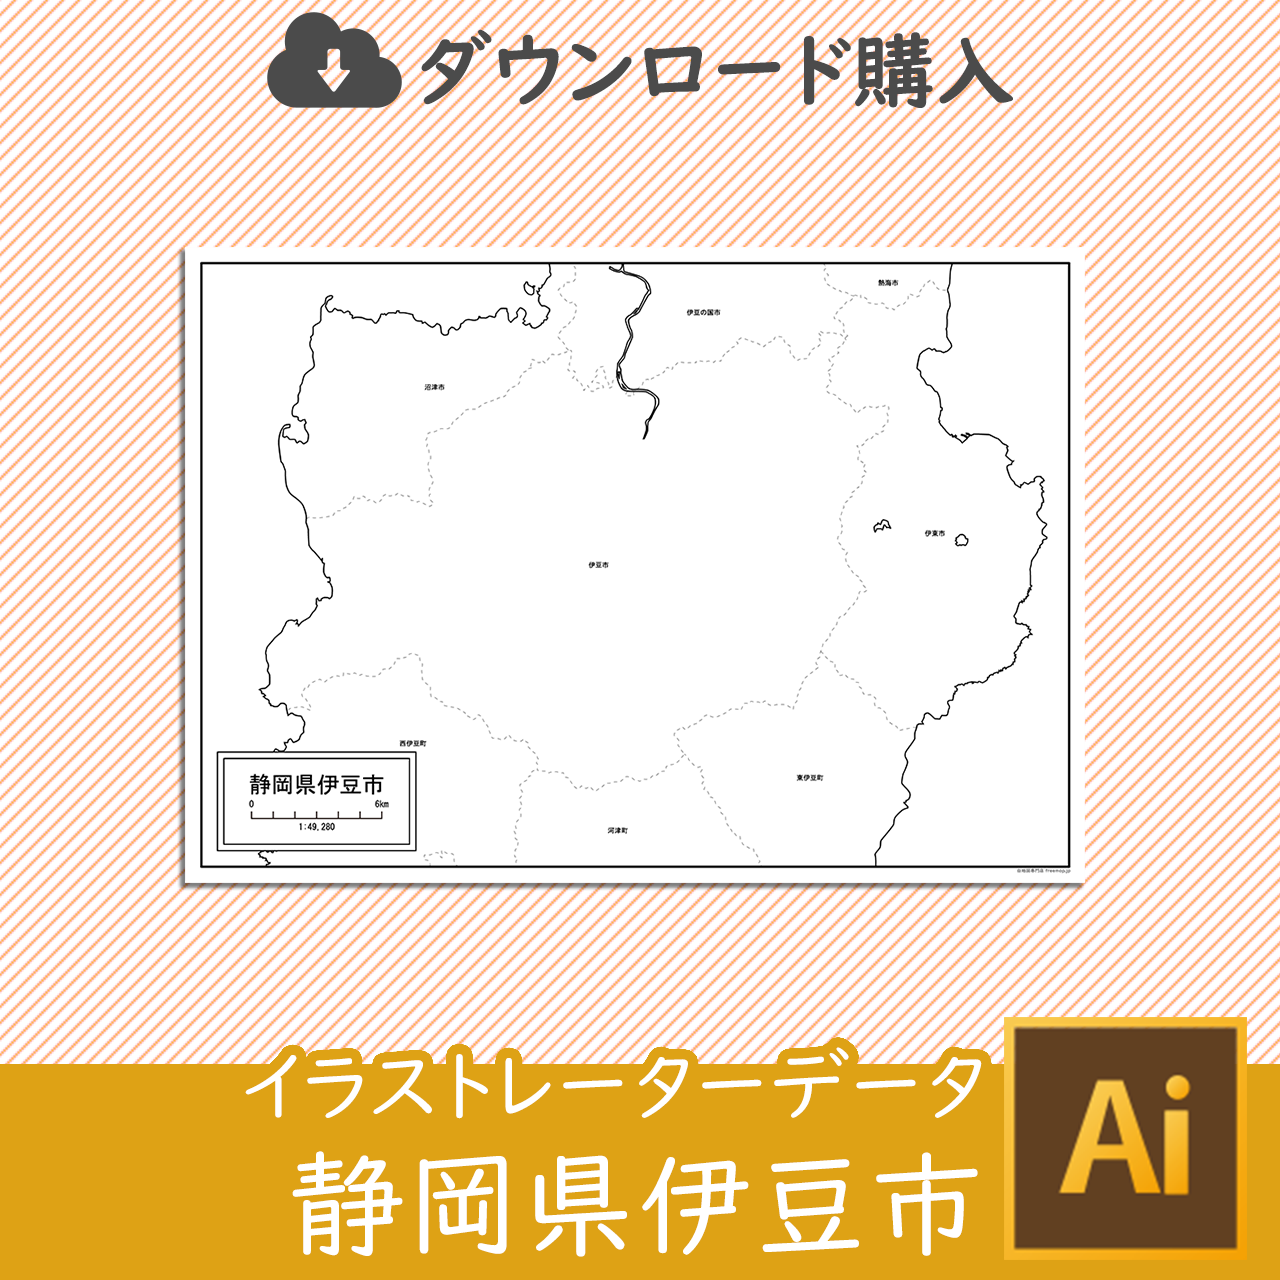 伊豆市のaiデータのサムネイル画像